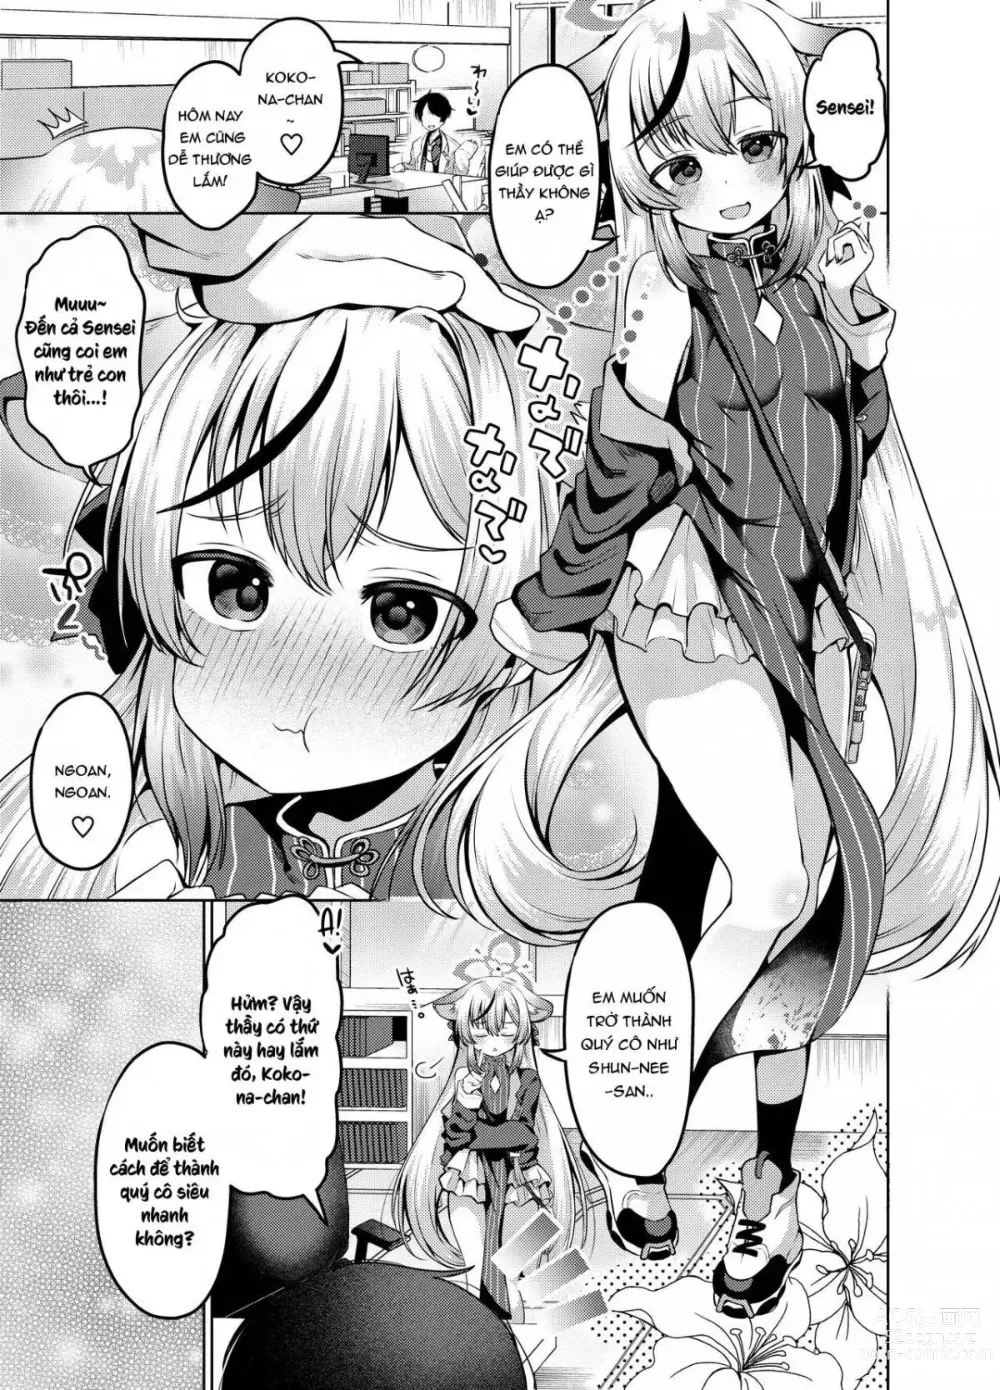 Page 3 of doujinshi Kokona-chan muốn trở thành một quý cô